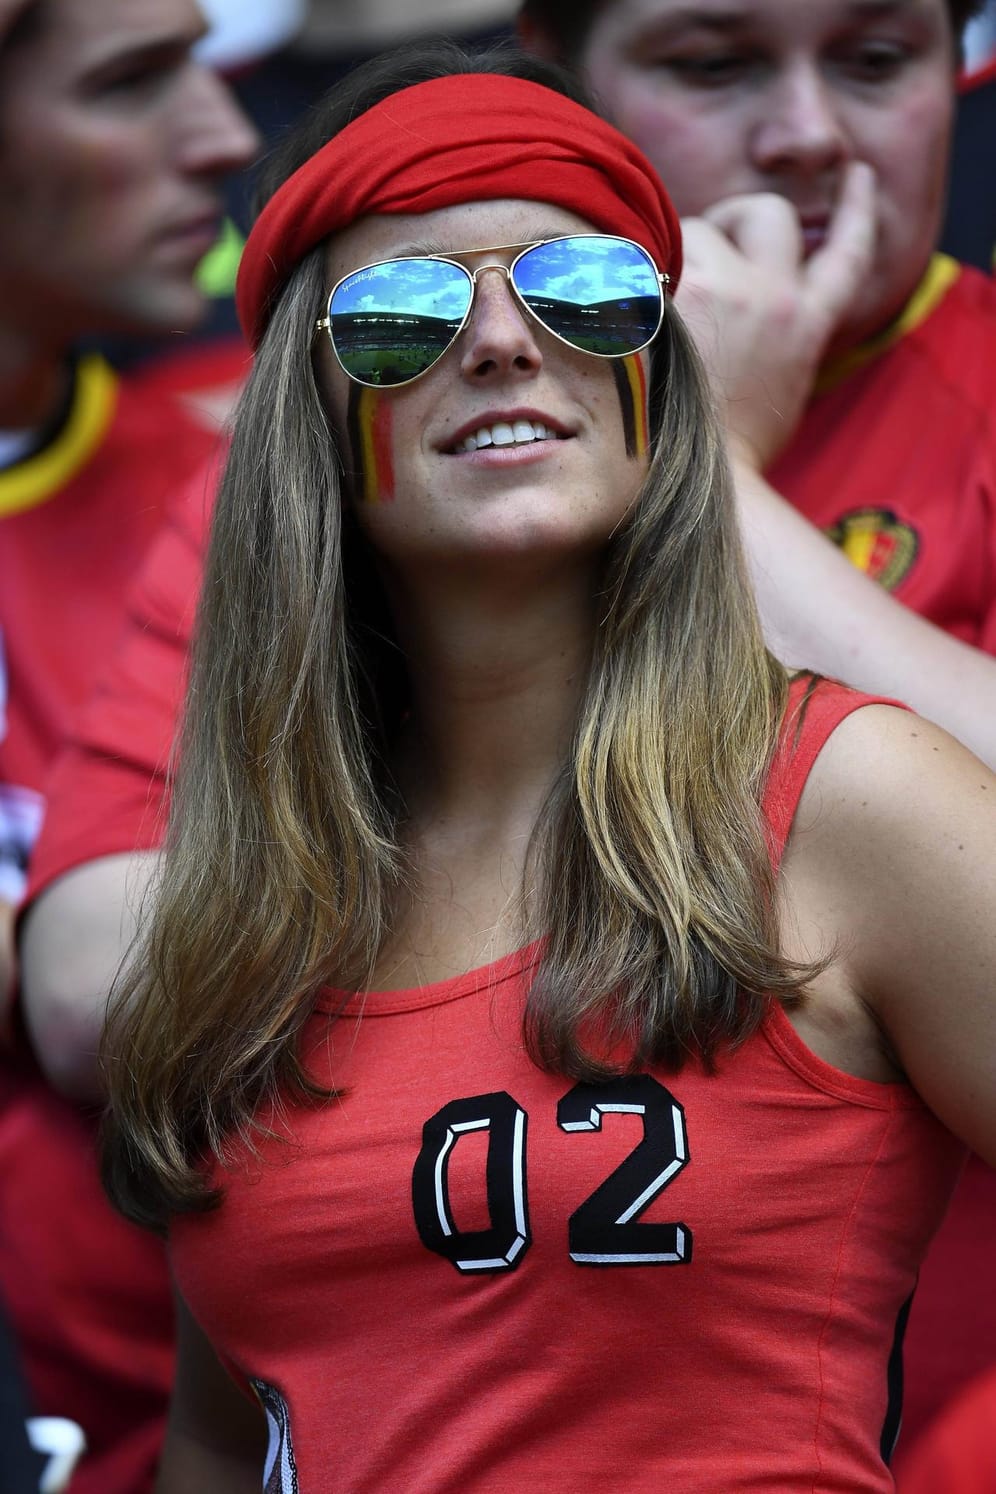 Extrem lässig präsentiert sich diese Belgierin. Angesichts des starken 3:0-Siegs gegen Irland auch kein Wunder.